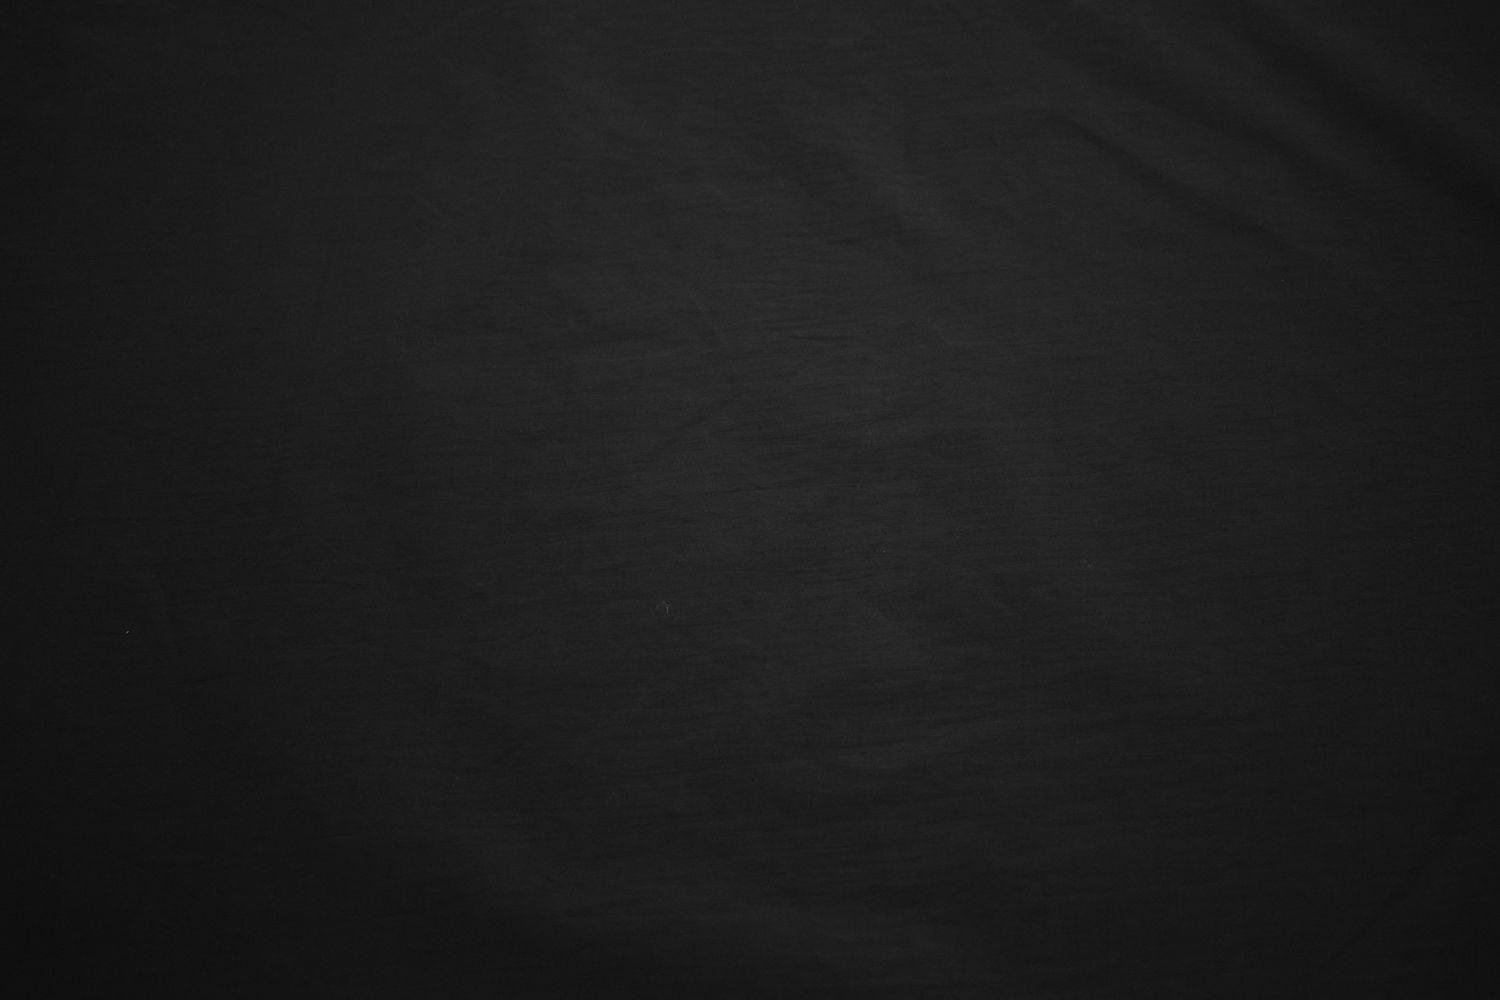 Плательная черная ткань W-130226